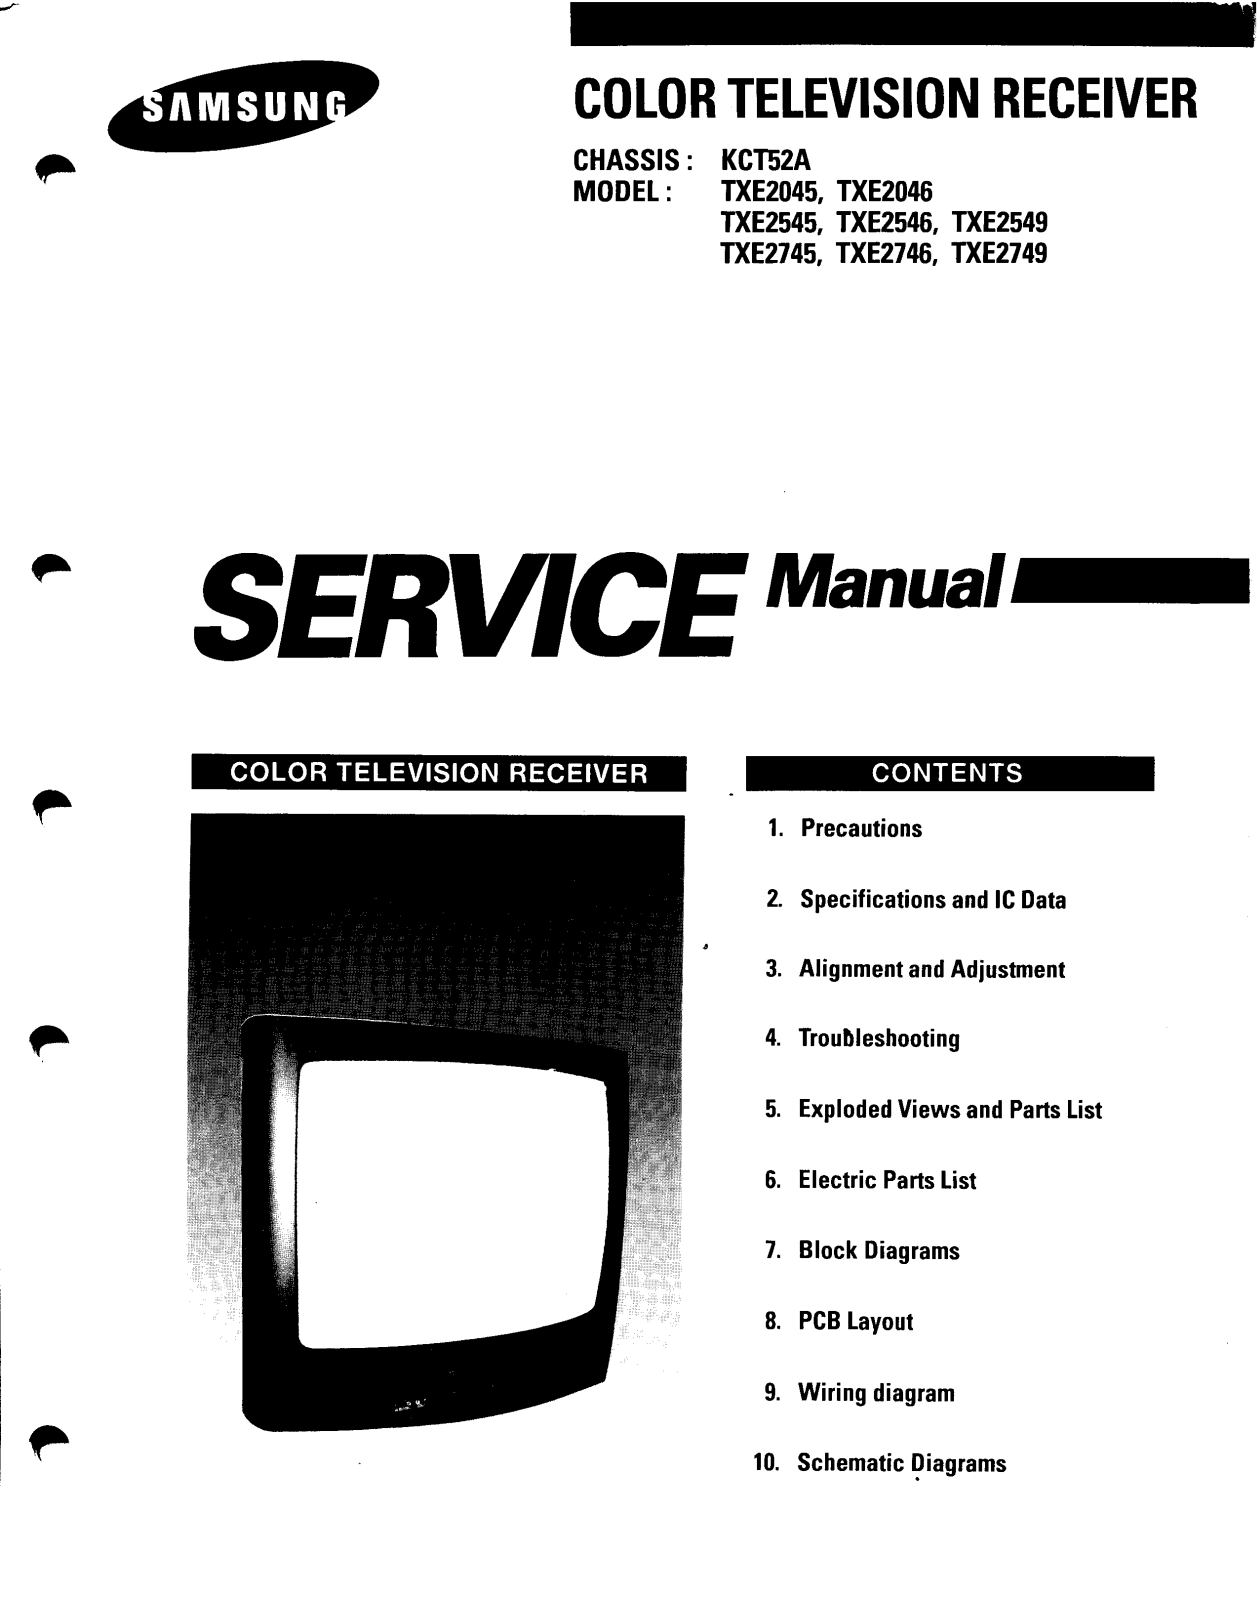 Samsung TXE2745, TXE2746, TXE2749, TXE2045 Service Manual